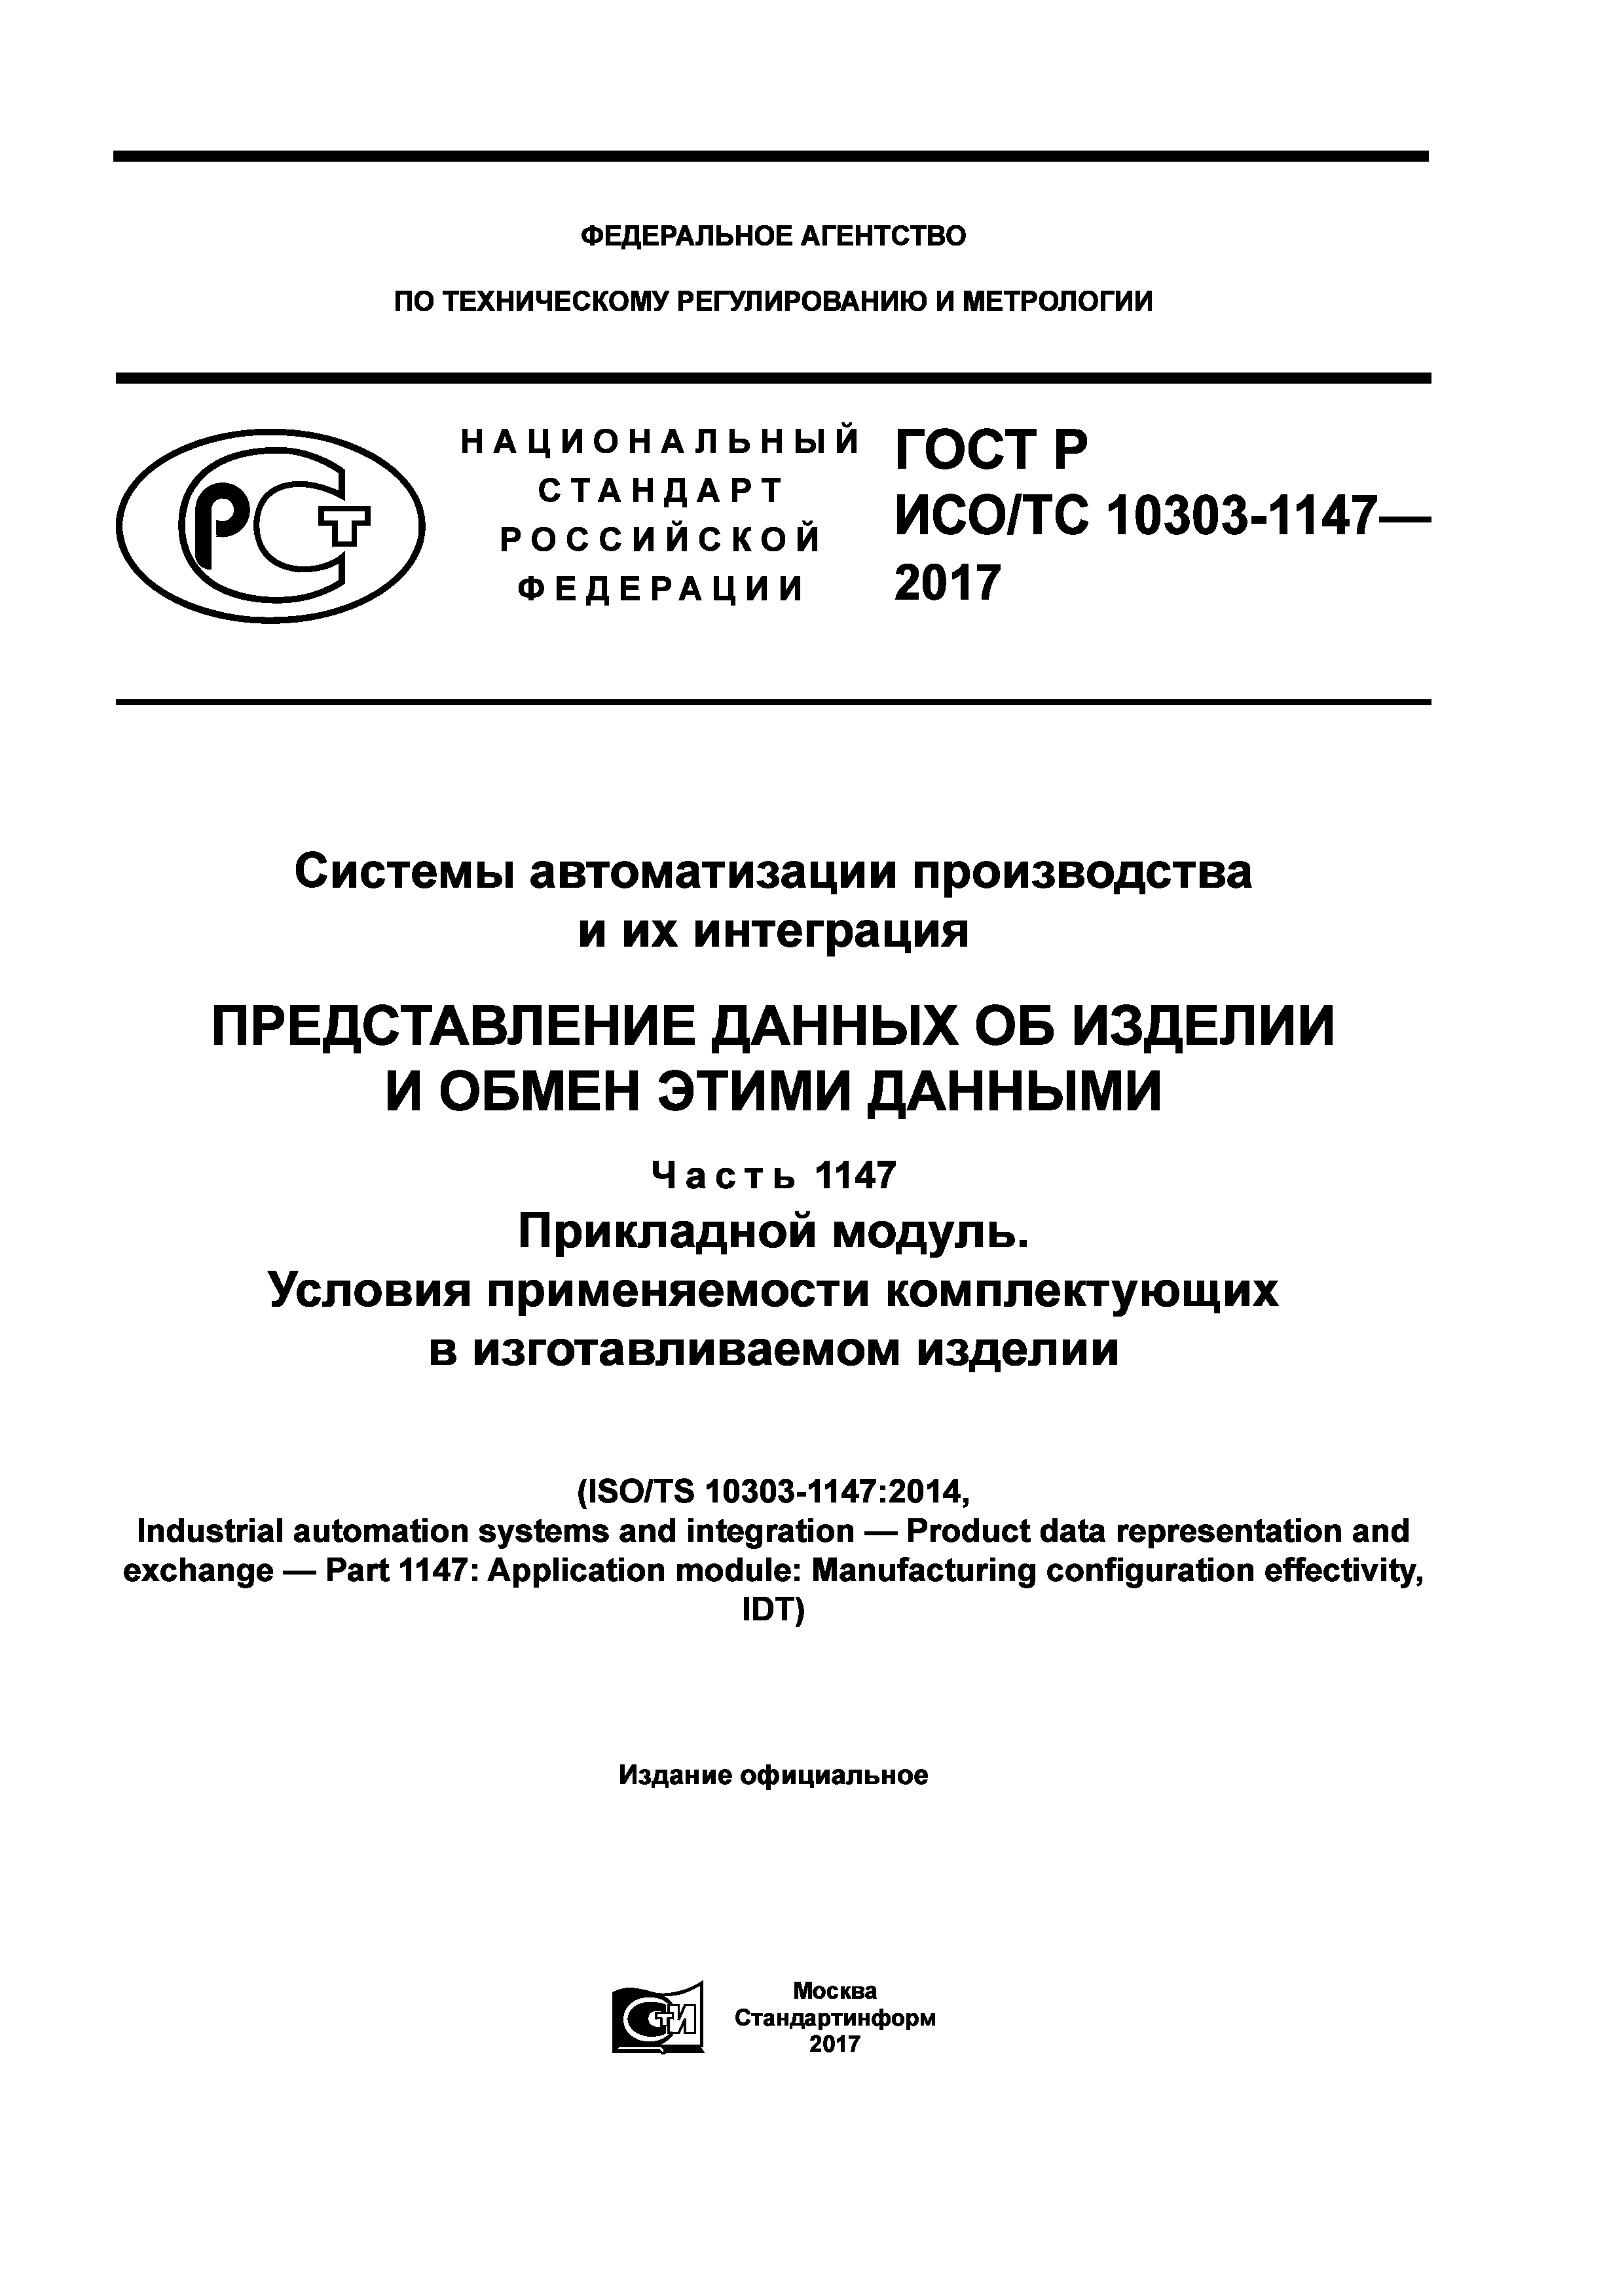 ГОСТ Р ИСО/ТС 10303-1147-2017